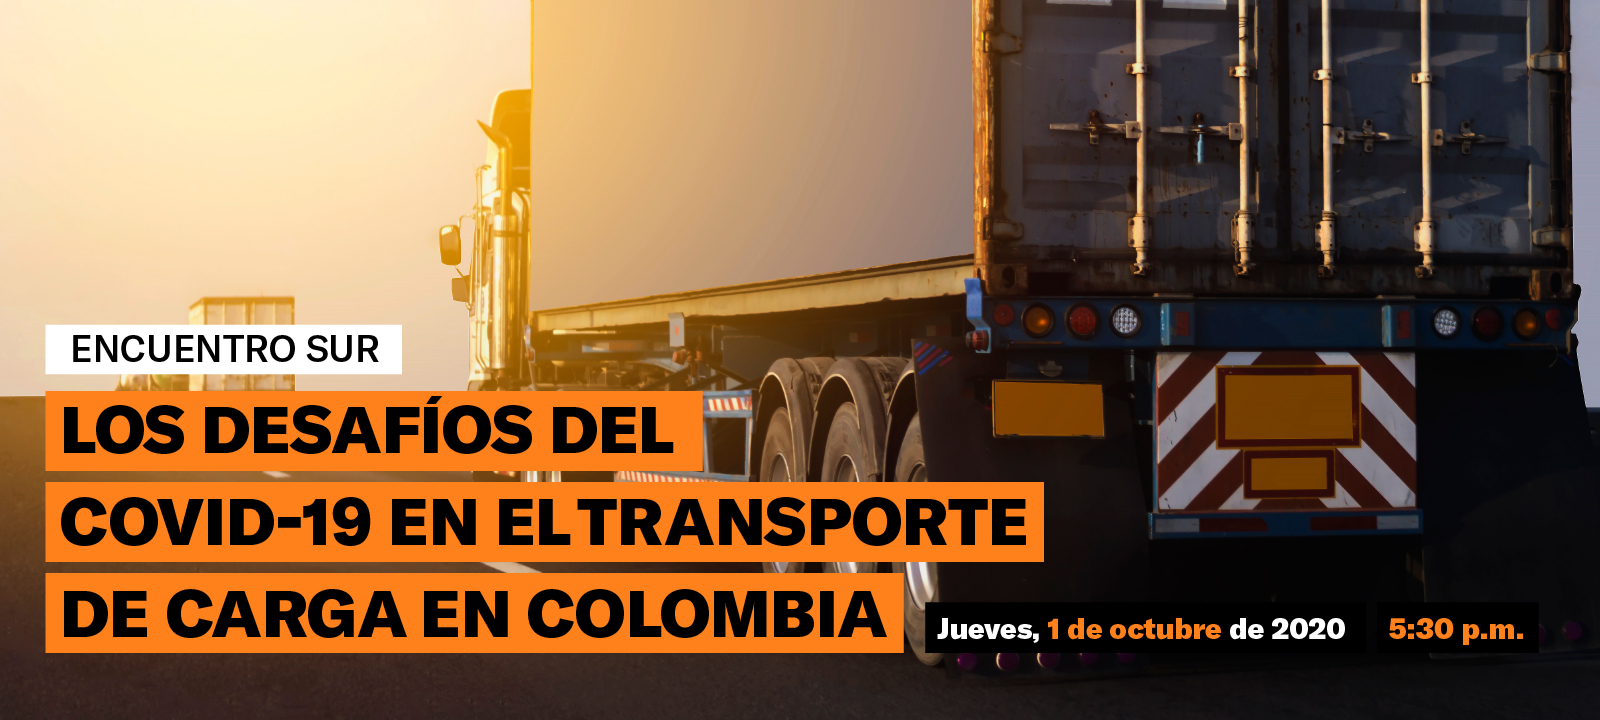 Los desafíos del Covid-19 en el transporte de carga en Colombia